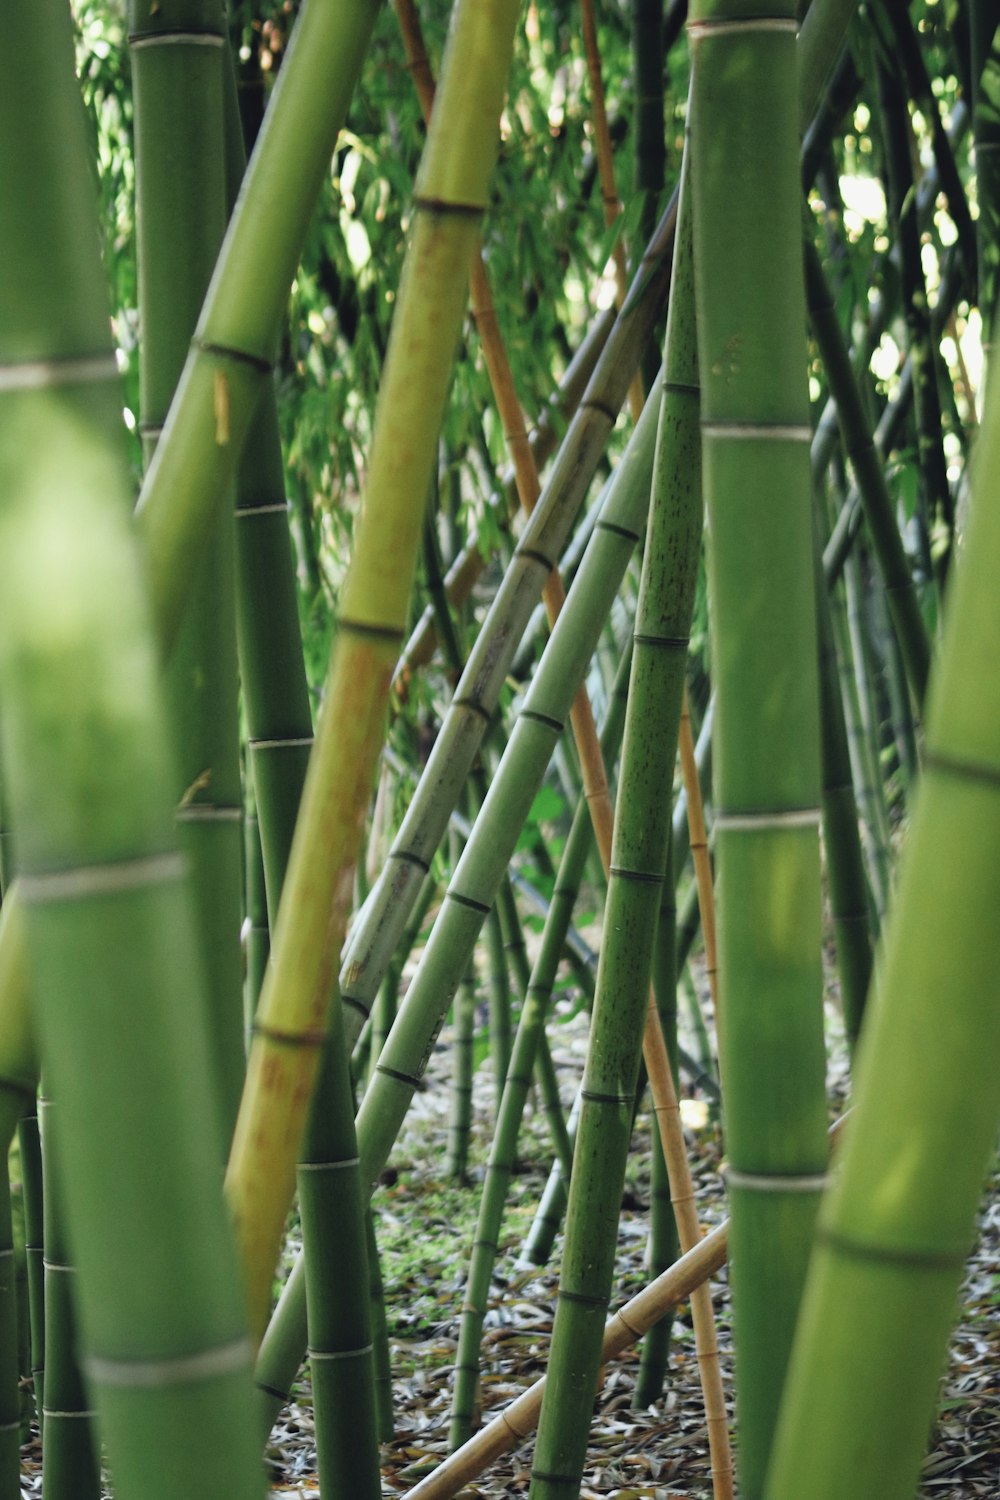 Green Bamboo Photo Free Plant Image On Unsplash